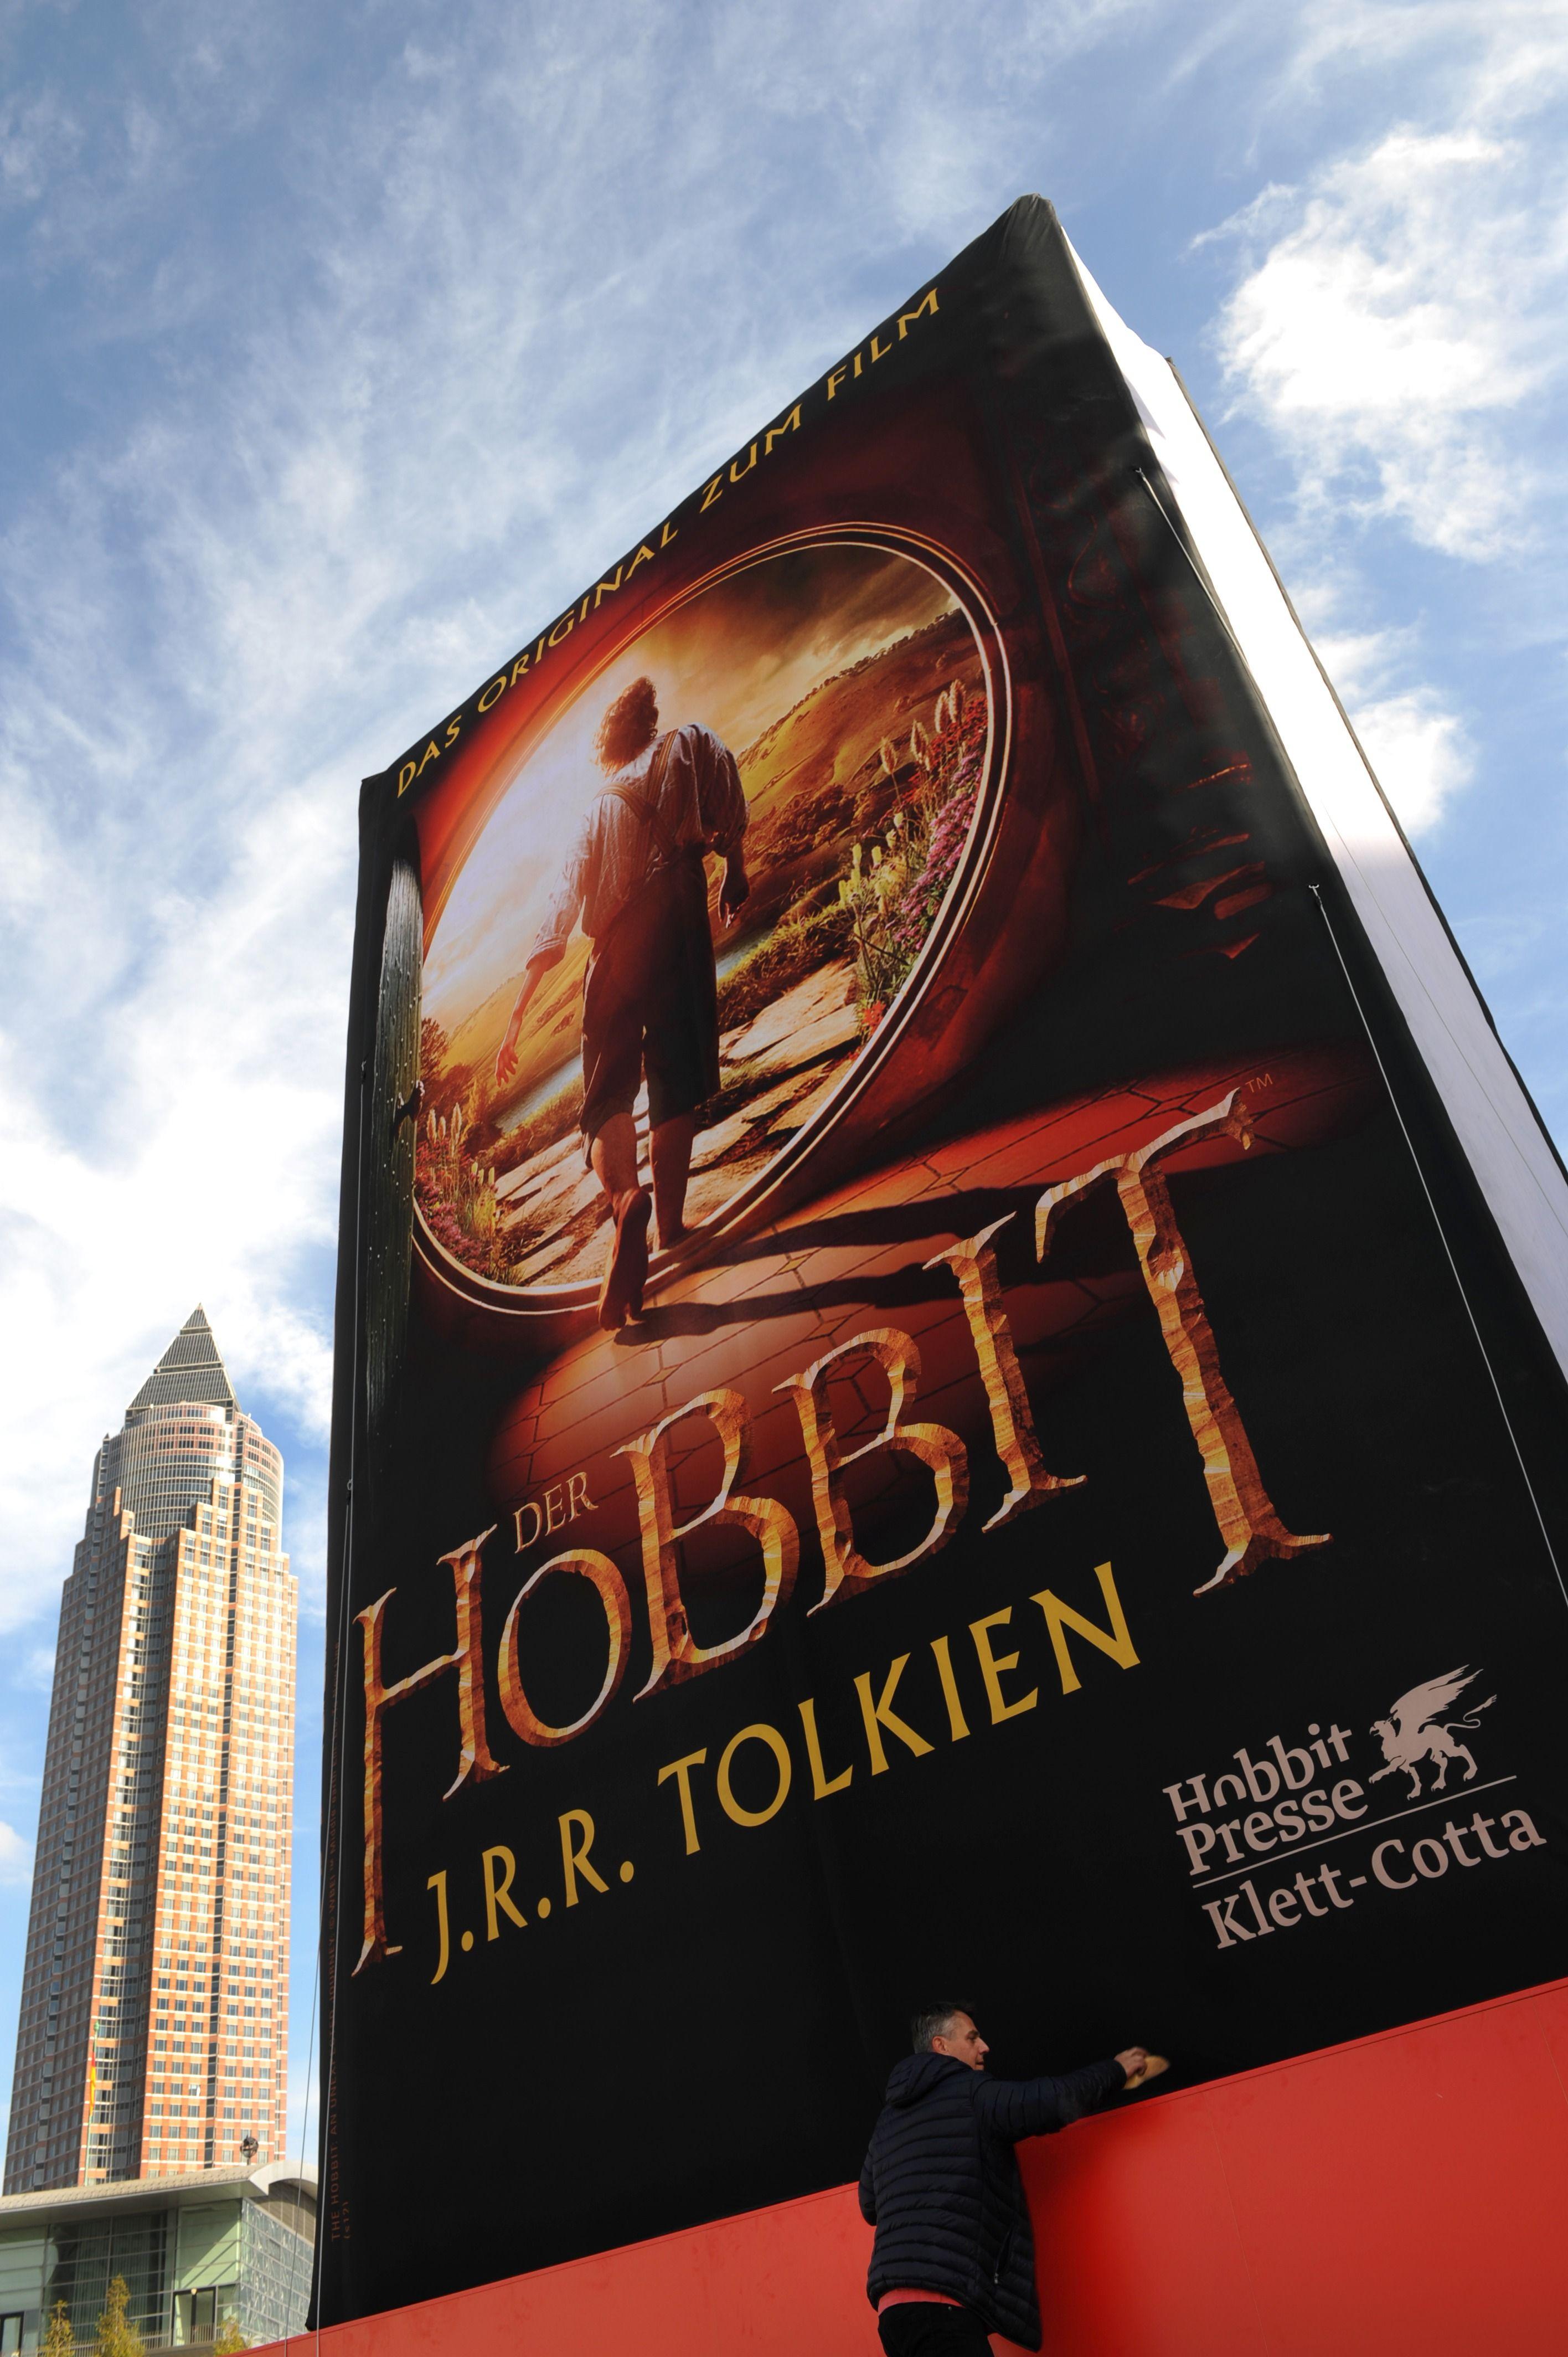 Un enorme libro inflable titulado 'El Hobbit' de J.R.R. Tolkien (Feria del libro en Frankfurt Main, Alemania, 2012).